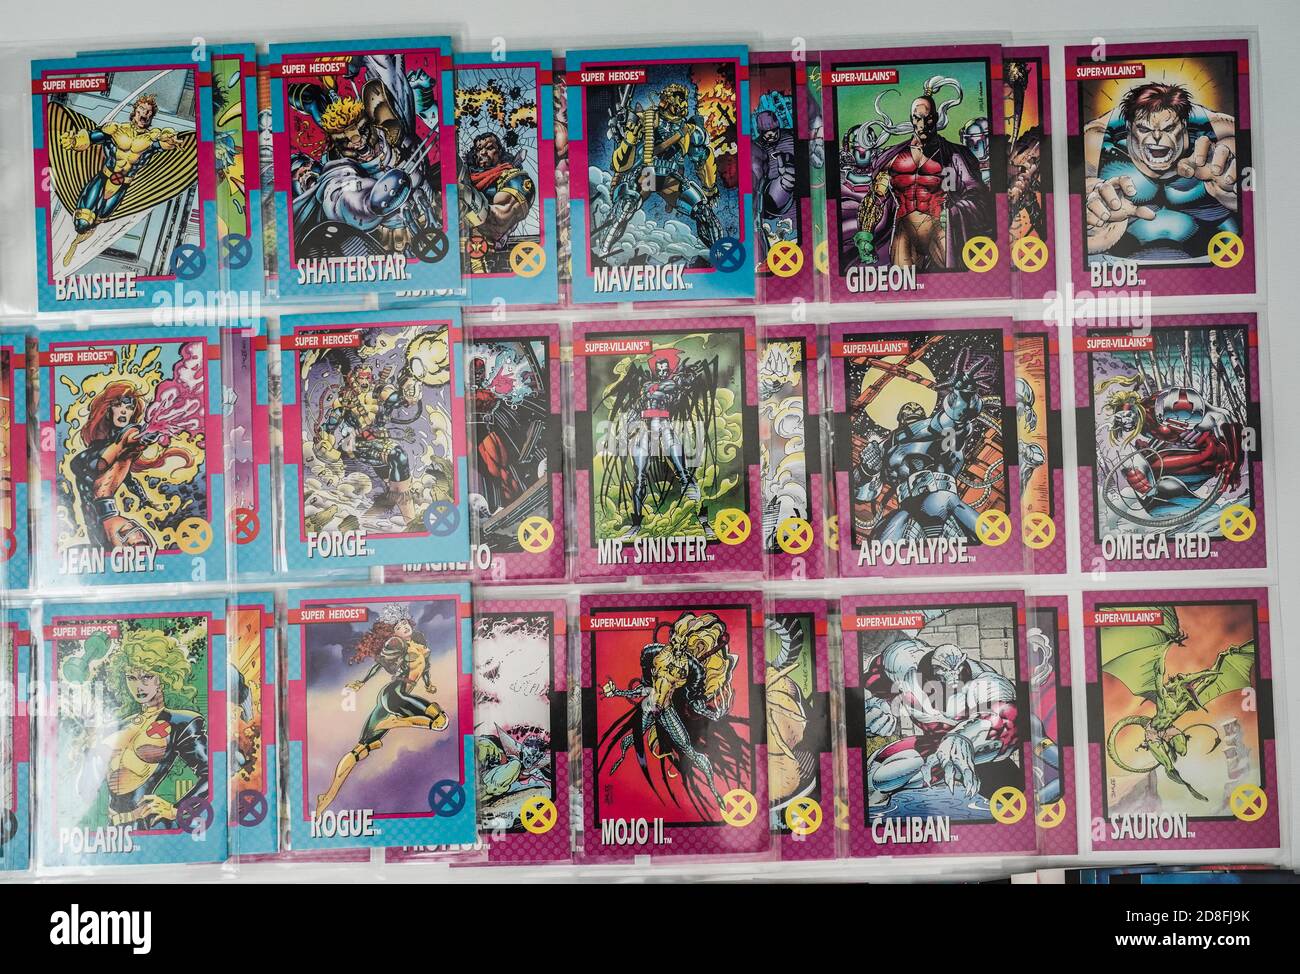 carte de commerce superhéros x-men dans des inserts en plastique Banque D'Images